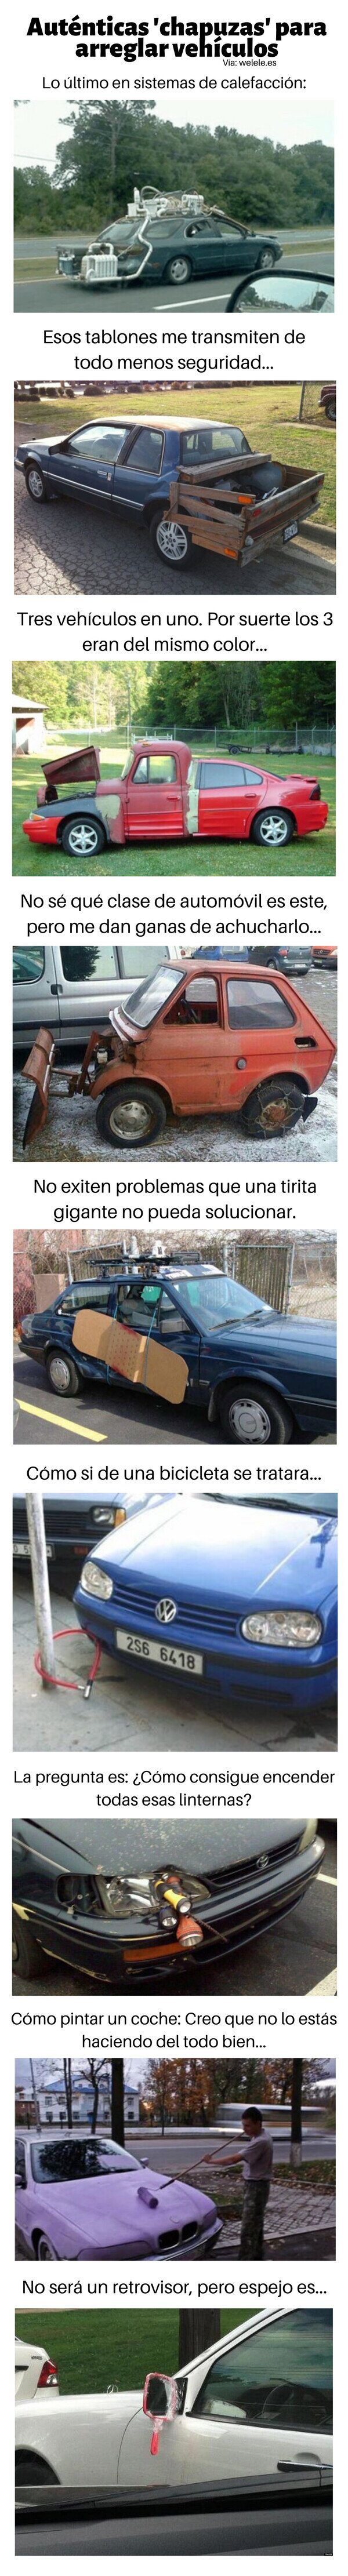 Meme_otros - Auténticas 'chapuzas' para arreglar vehículos